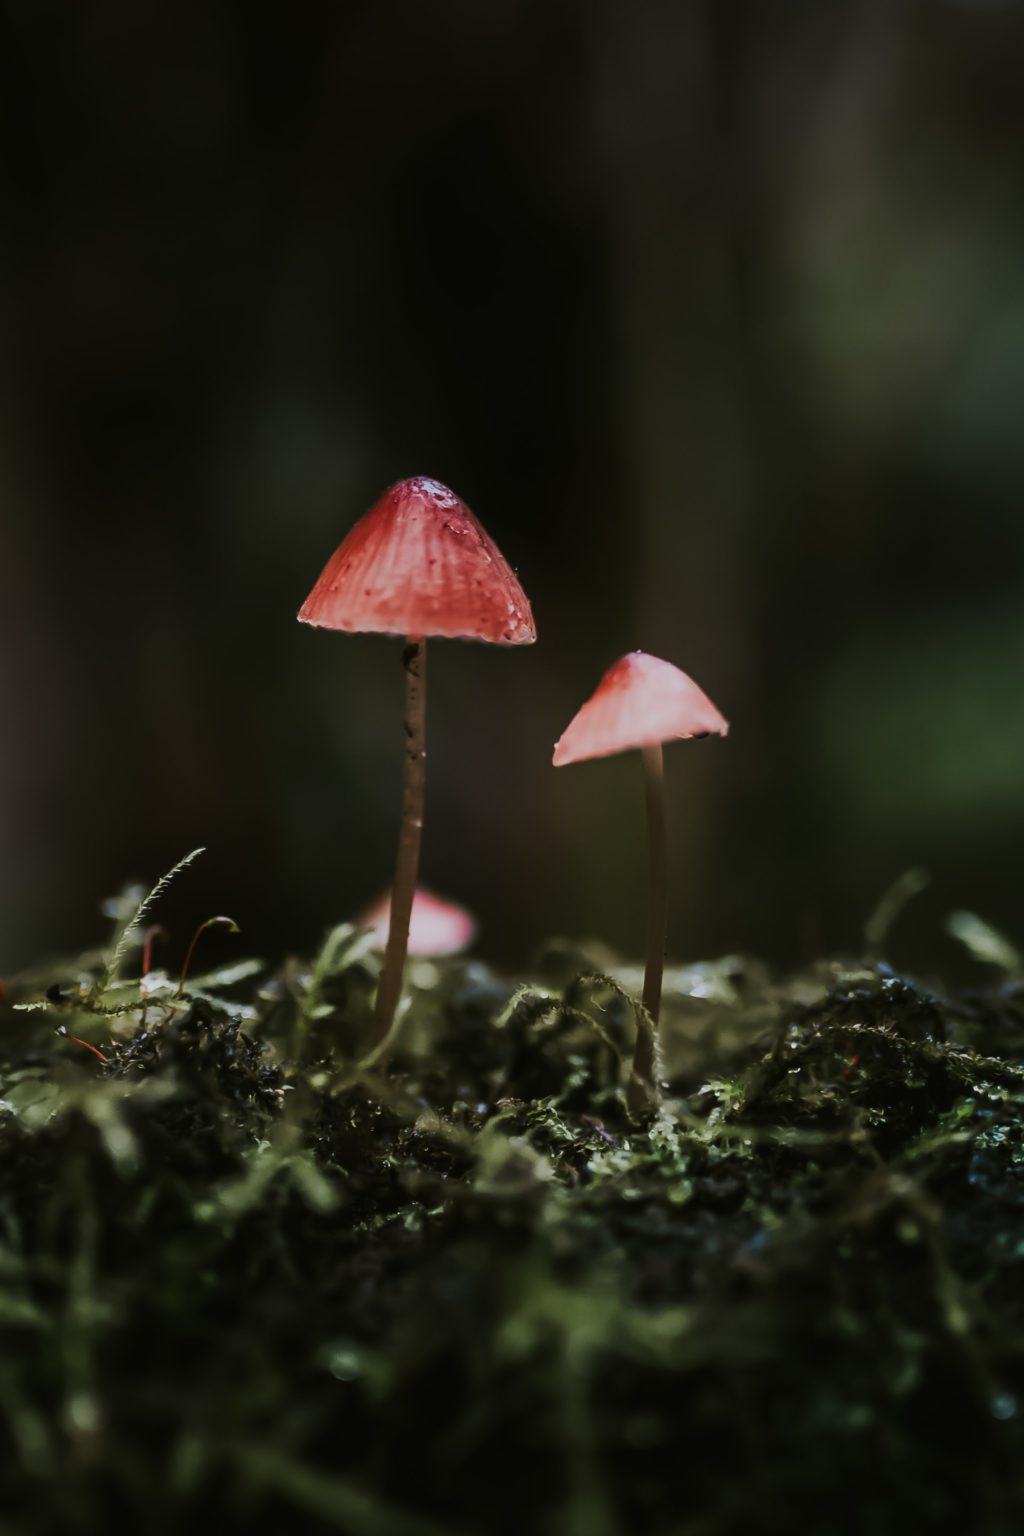 delicate red fungi